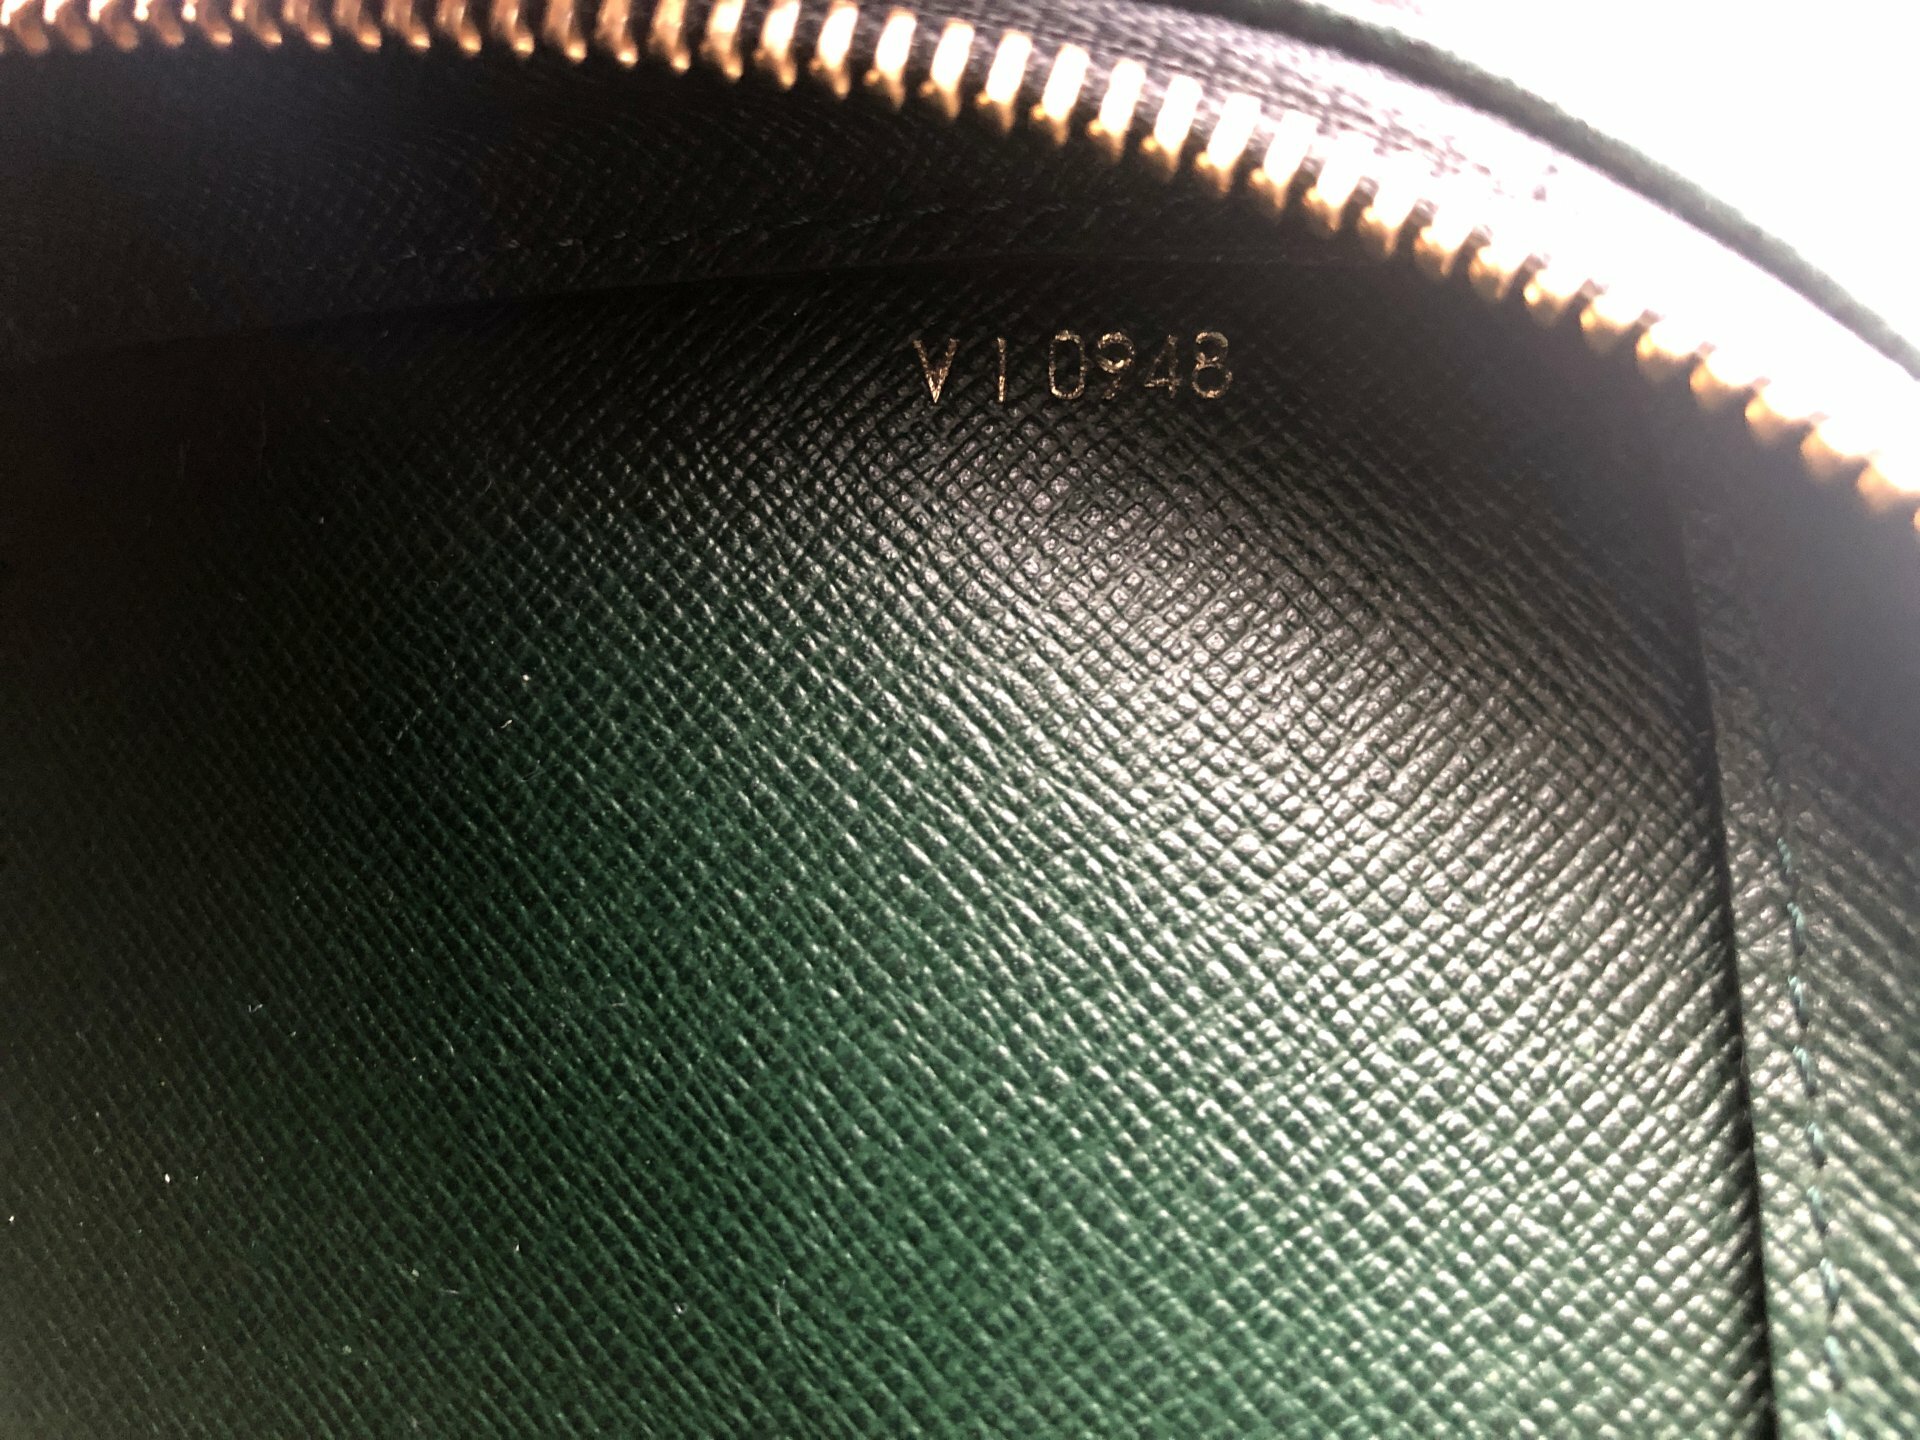 LOUIS VUITTON Baikal Clutch Hand Bag Taiga Leather Green France M30184  02AC741